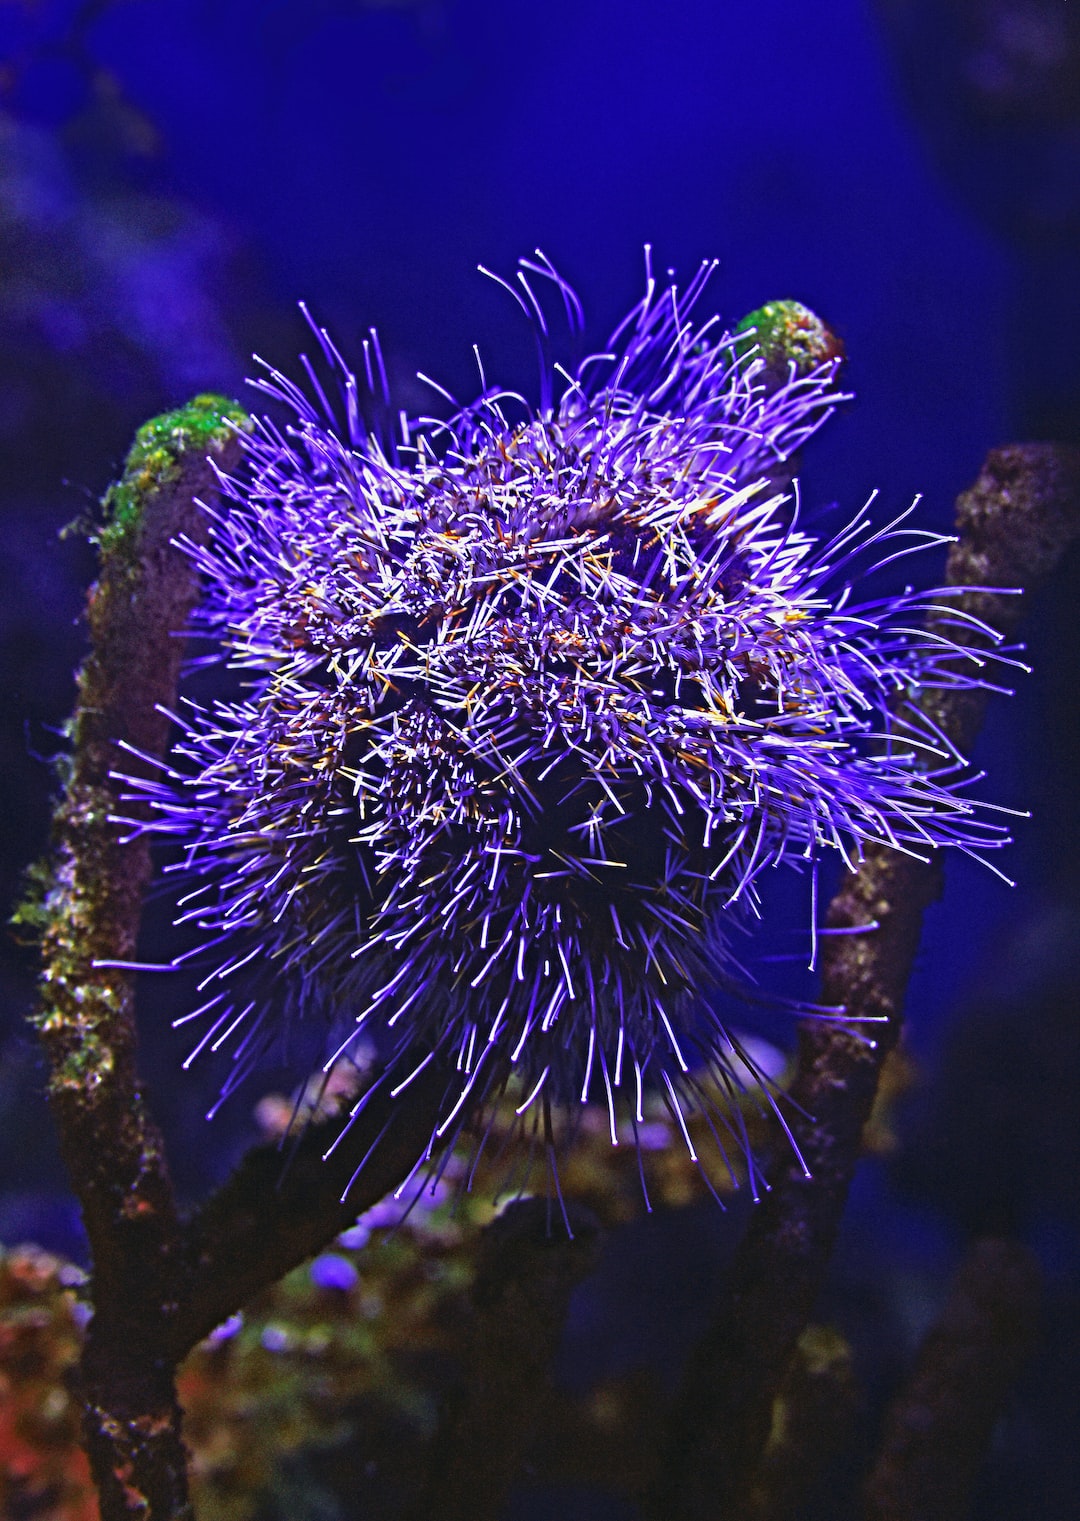 19 wichtige Fragen zu Minihai Aquarium Süßwasser